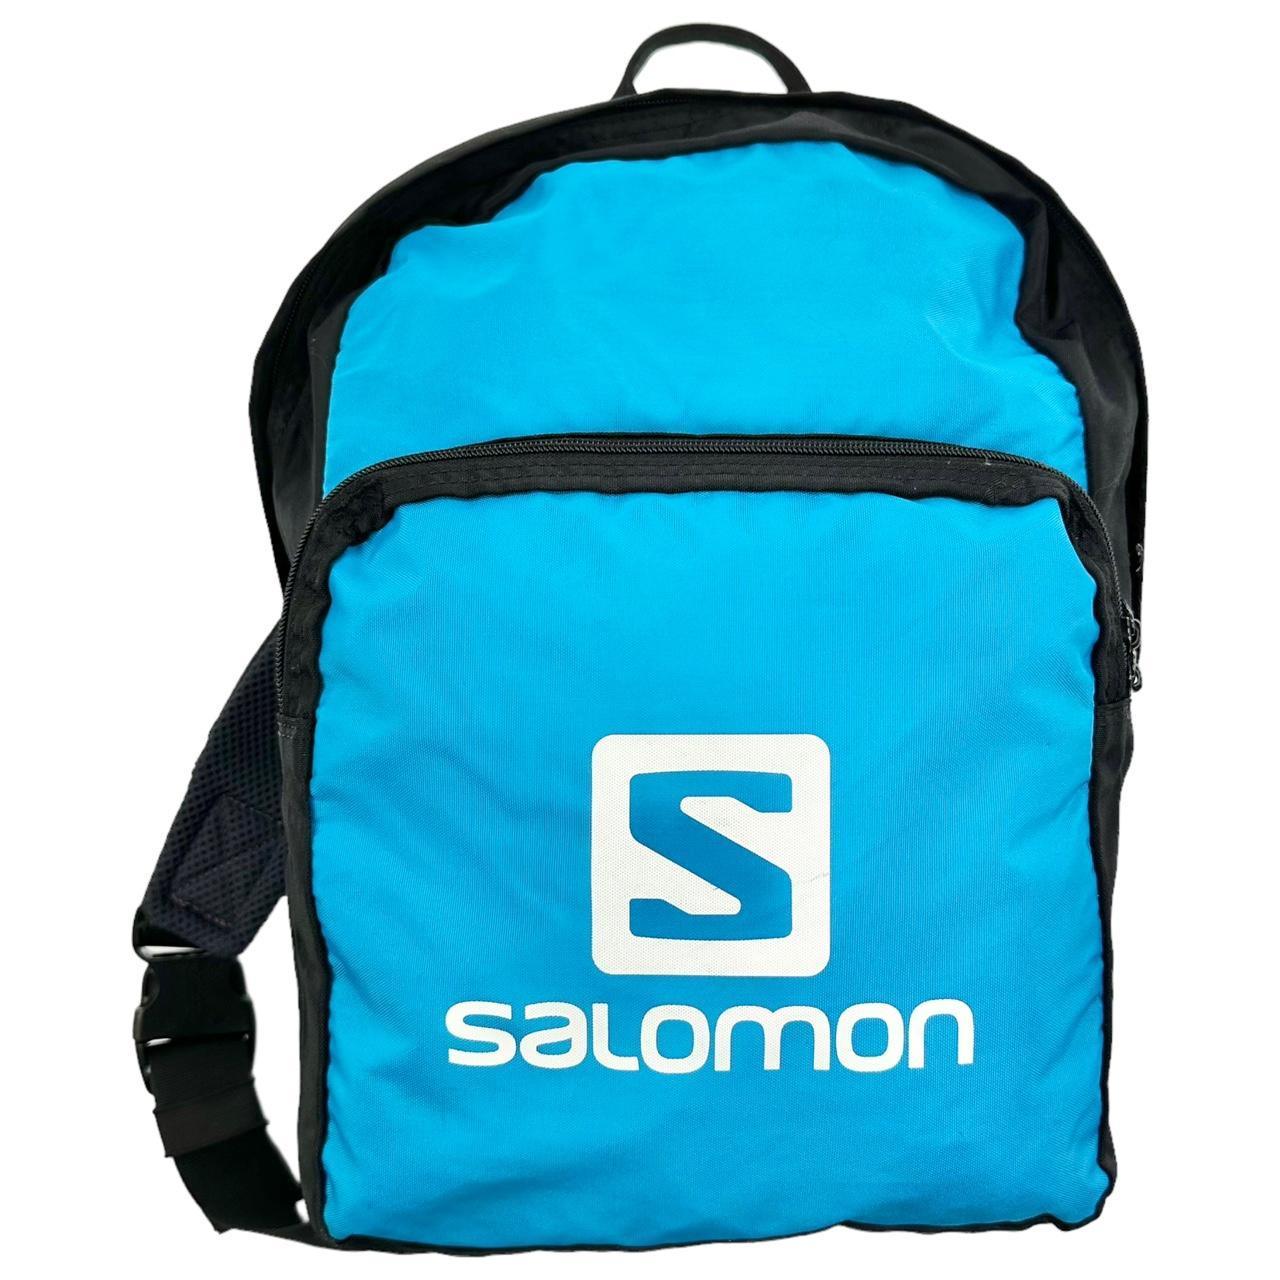 Vintage Salomon Sling Bag - Known Source